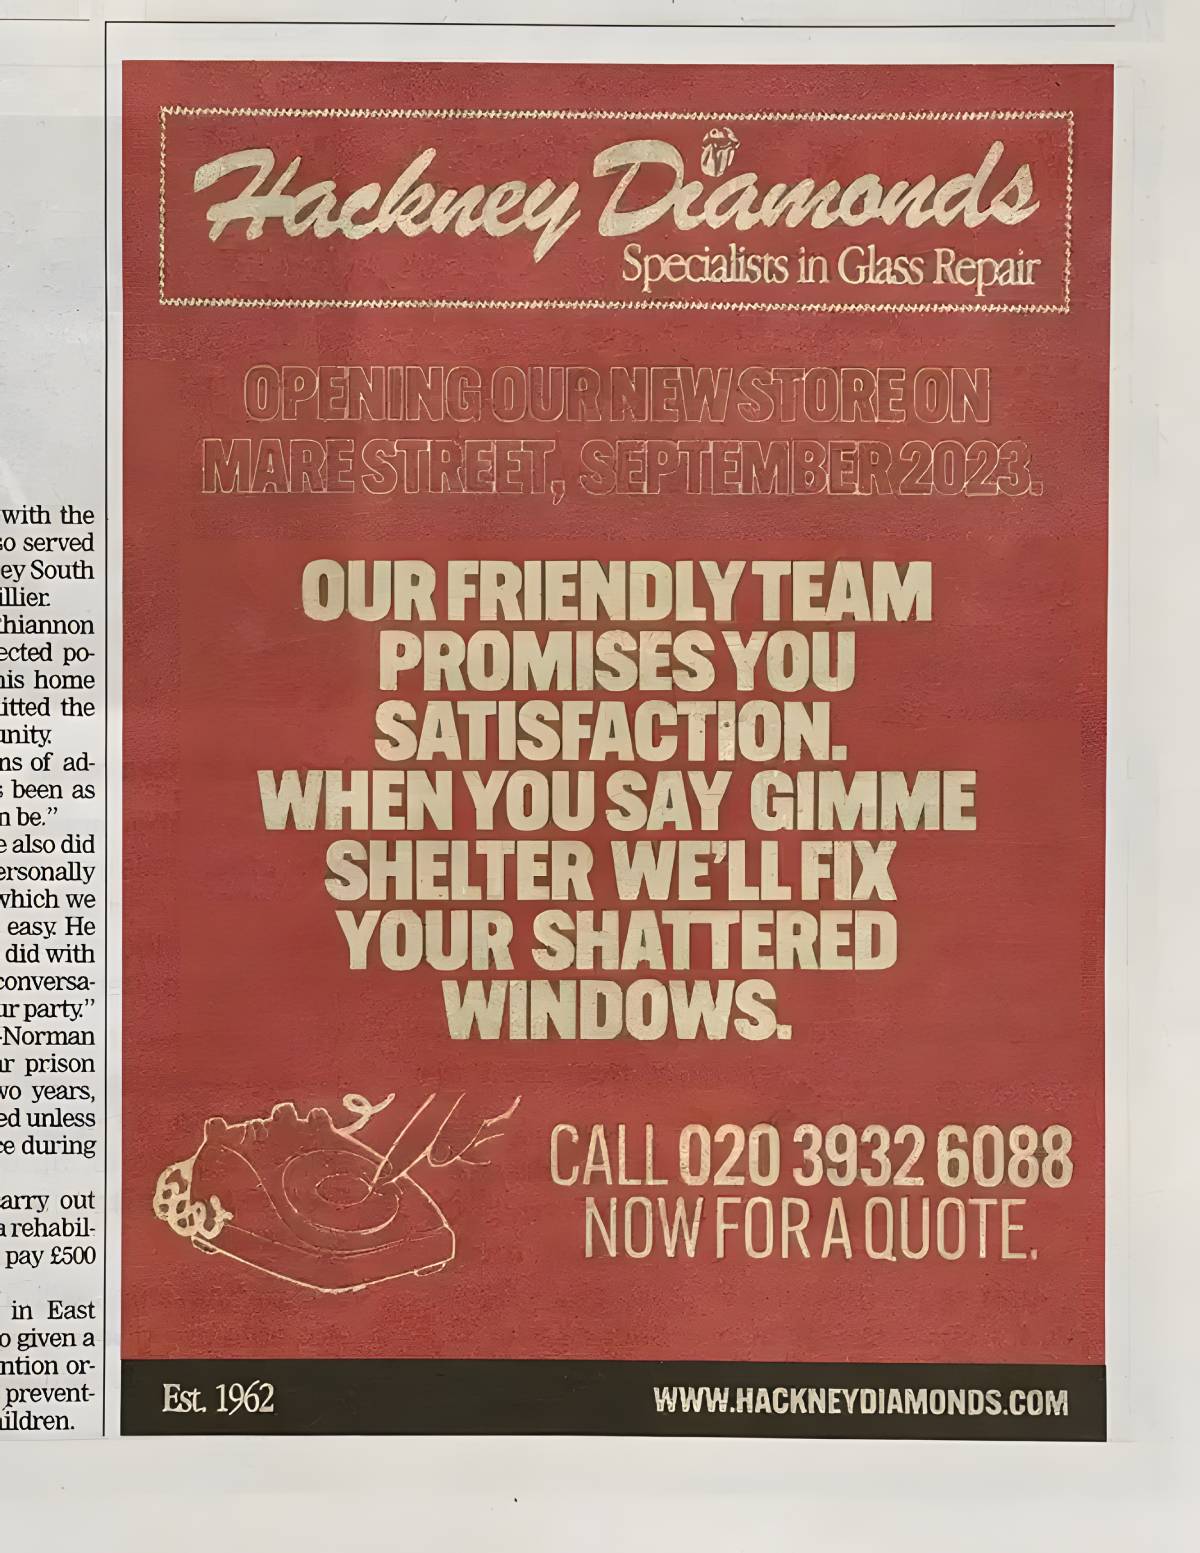 Campanha publicitária da Hackney Diamonds